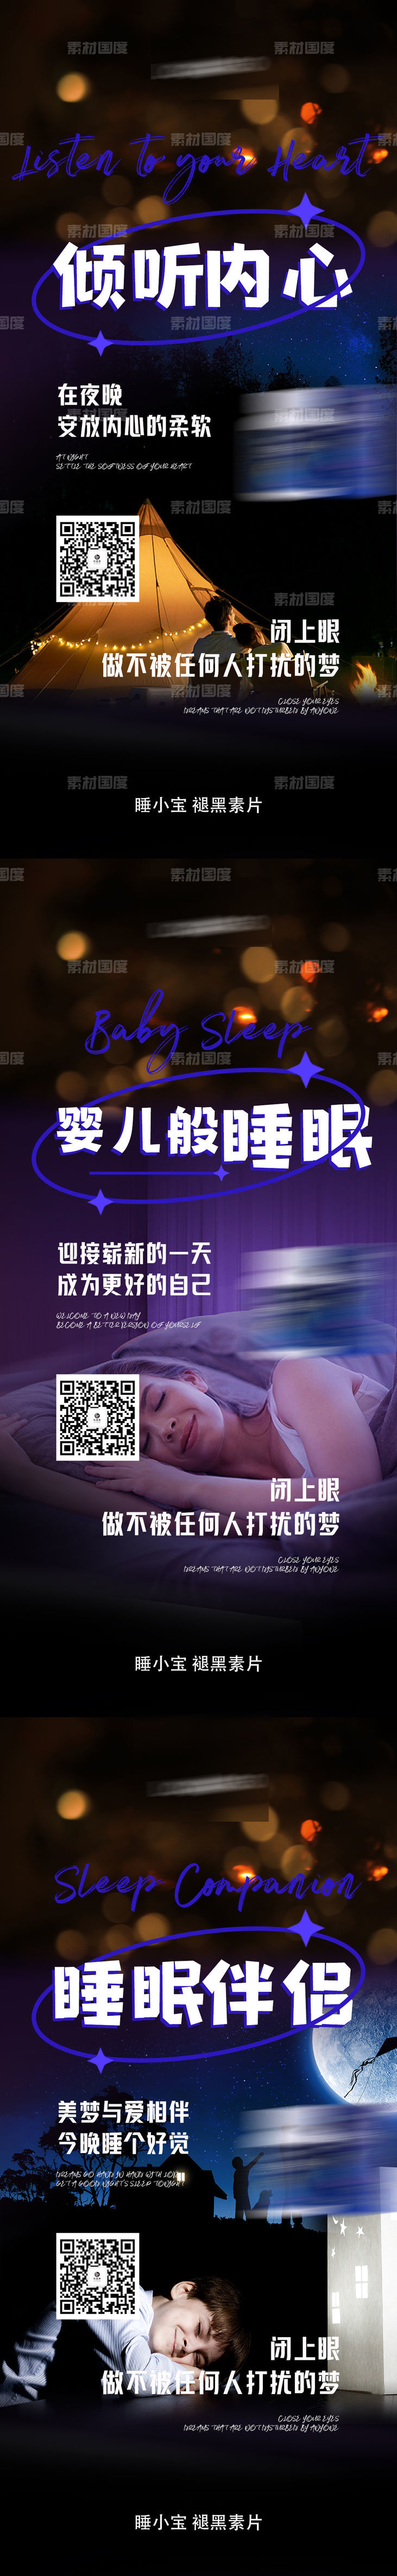 睡眠失眠保健养生产品海报